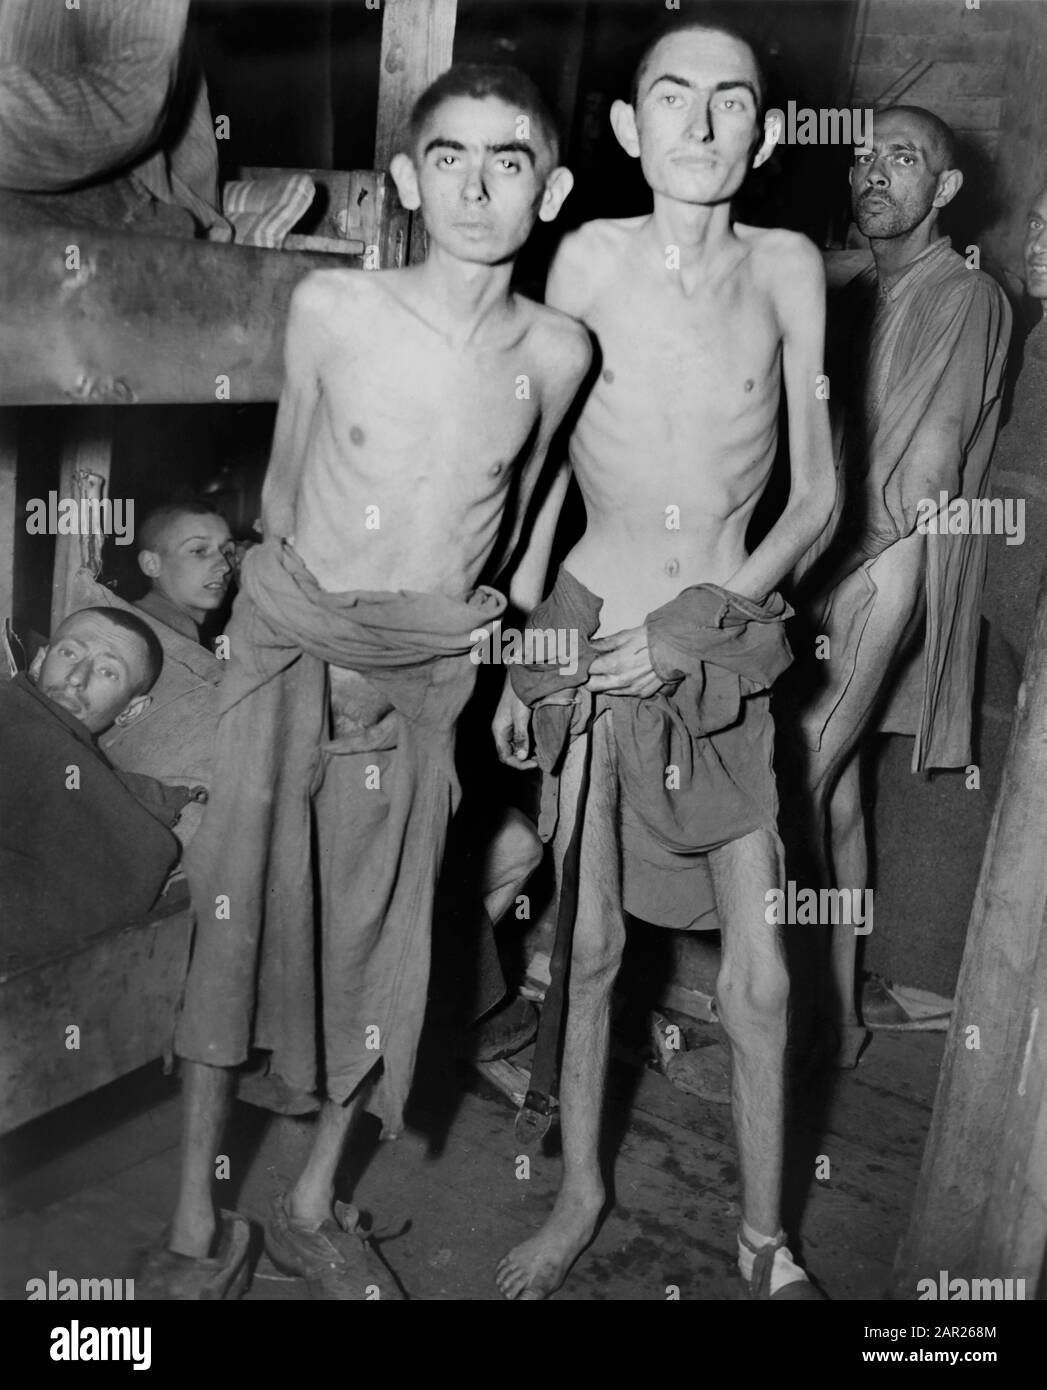 Männer, Die Unter Hunger leiden, die von Bunks im NS-Konzentrationslager stehen, das kürzlich Von Truppen der U.S. Third Army, Ampfing, Deutschland, befreit wurde, Foto des US Army Signal Corps, 4. Mai 1945 Stockfoto